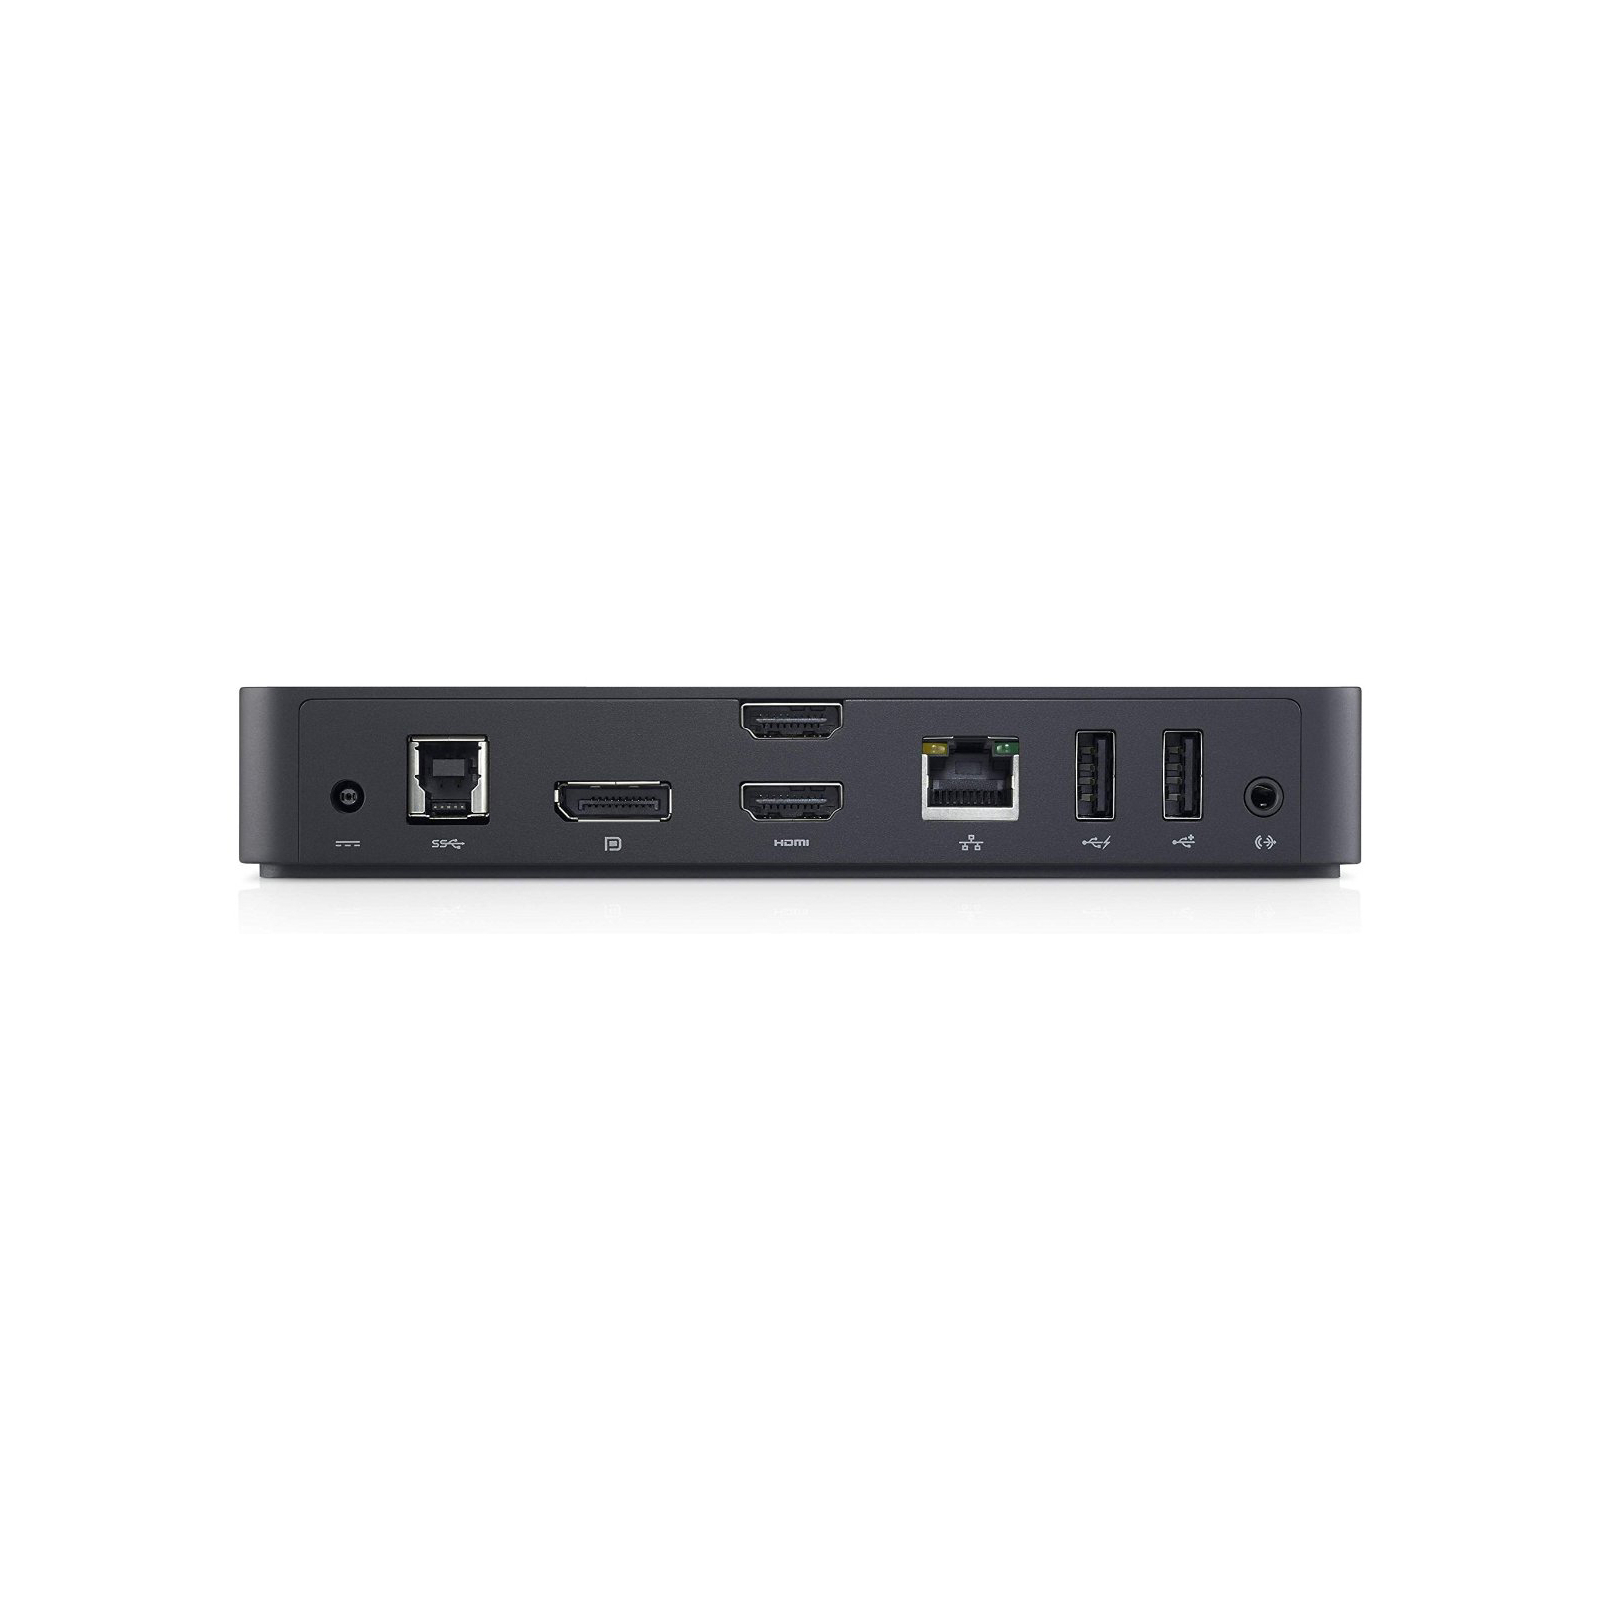 Порт-репликатор Dell USB 3.0 Ultra HD Triple Video Docking Station D3100 EUR (452-BBOT) изображение 2